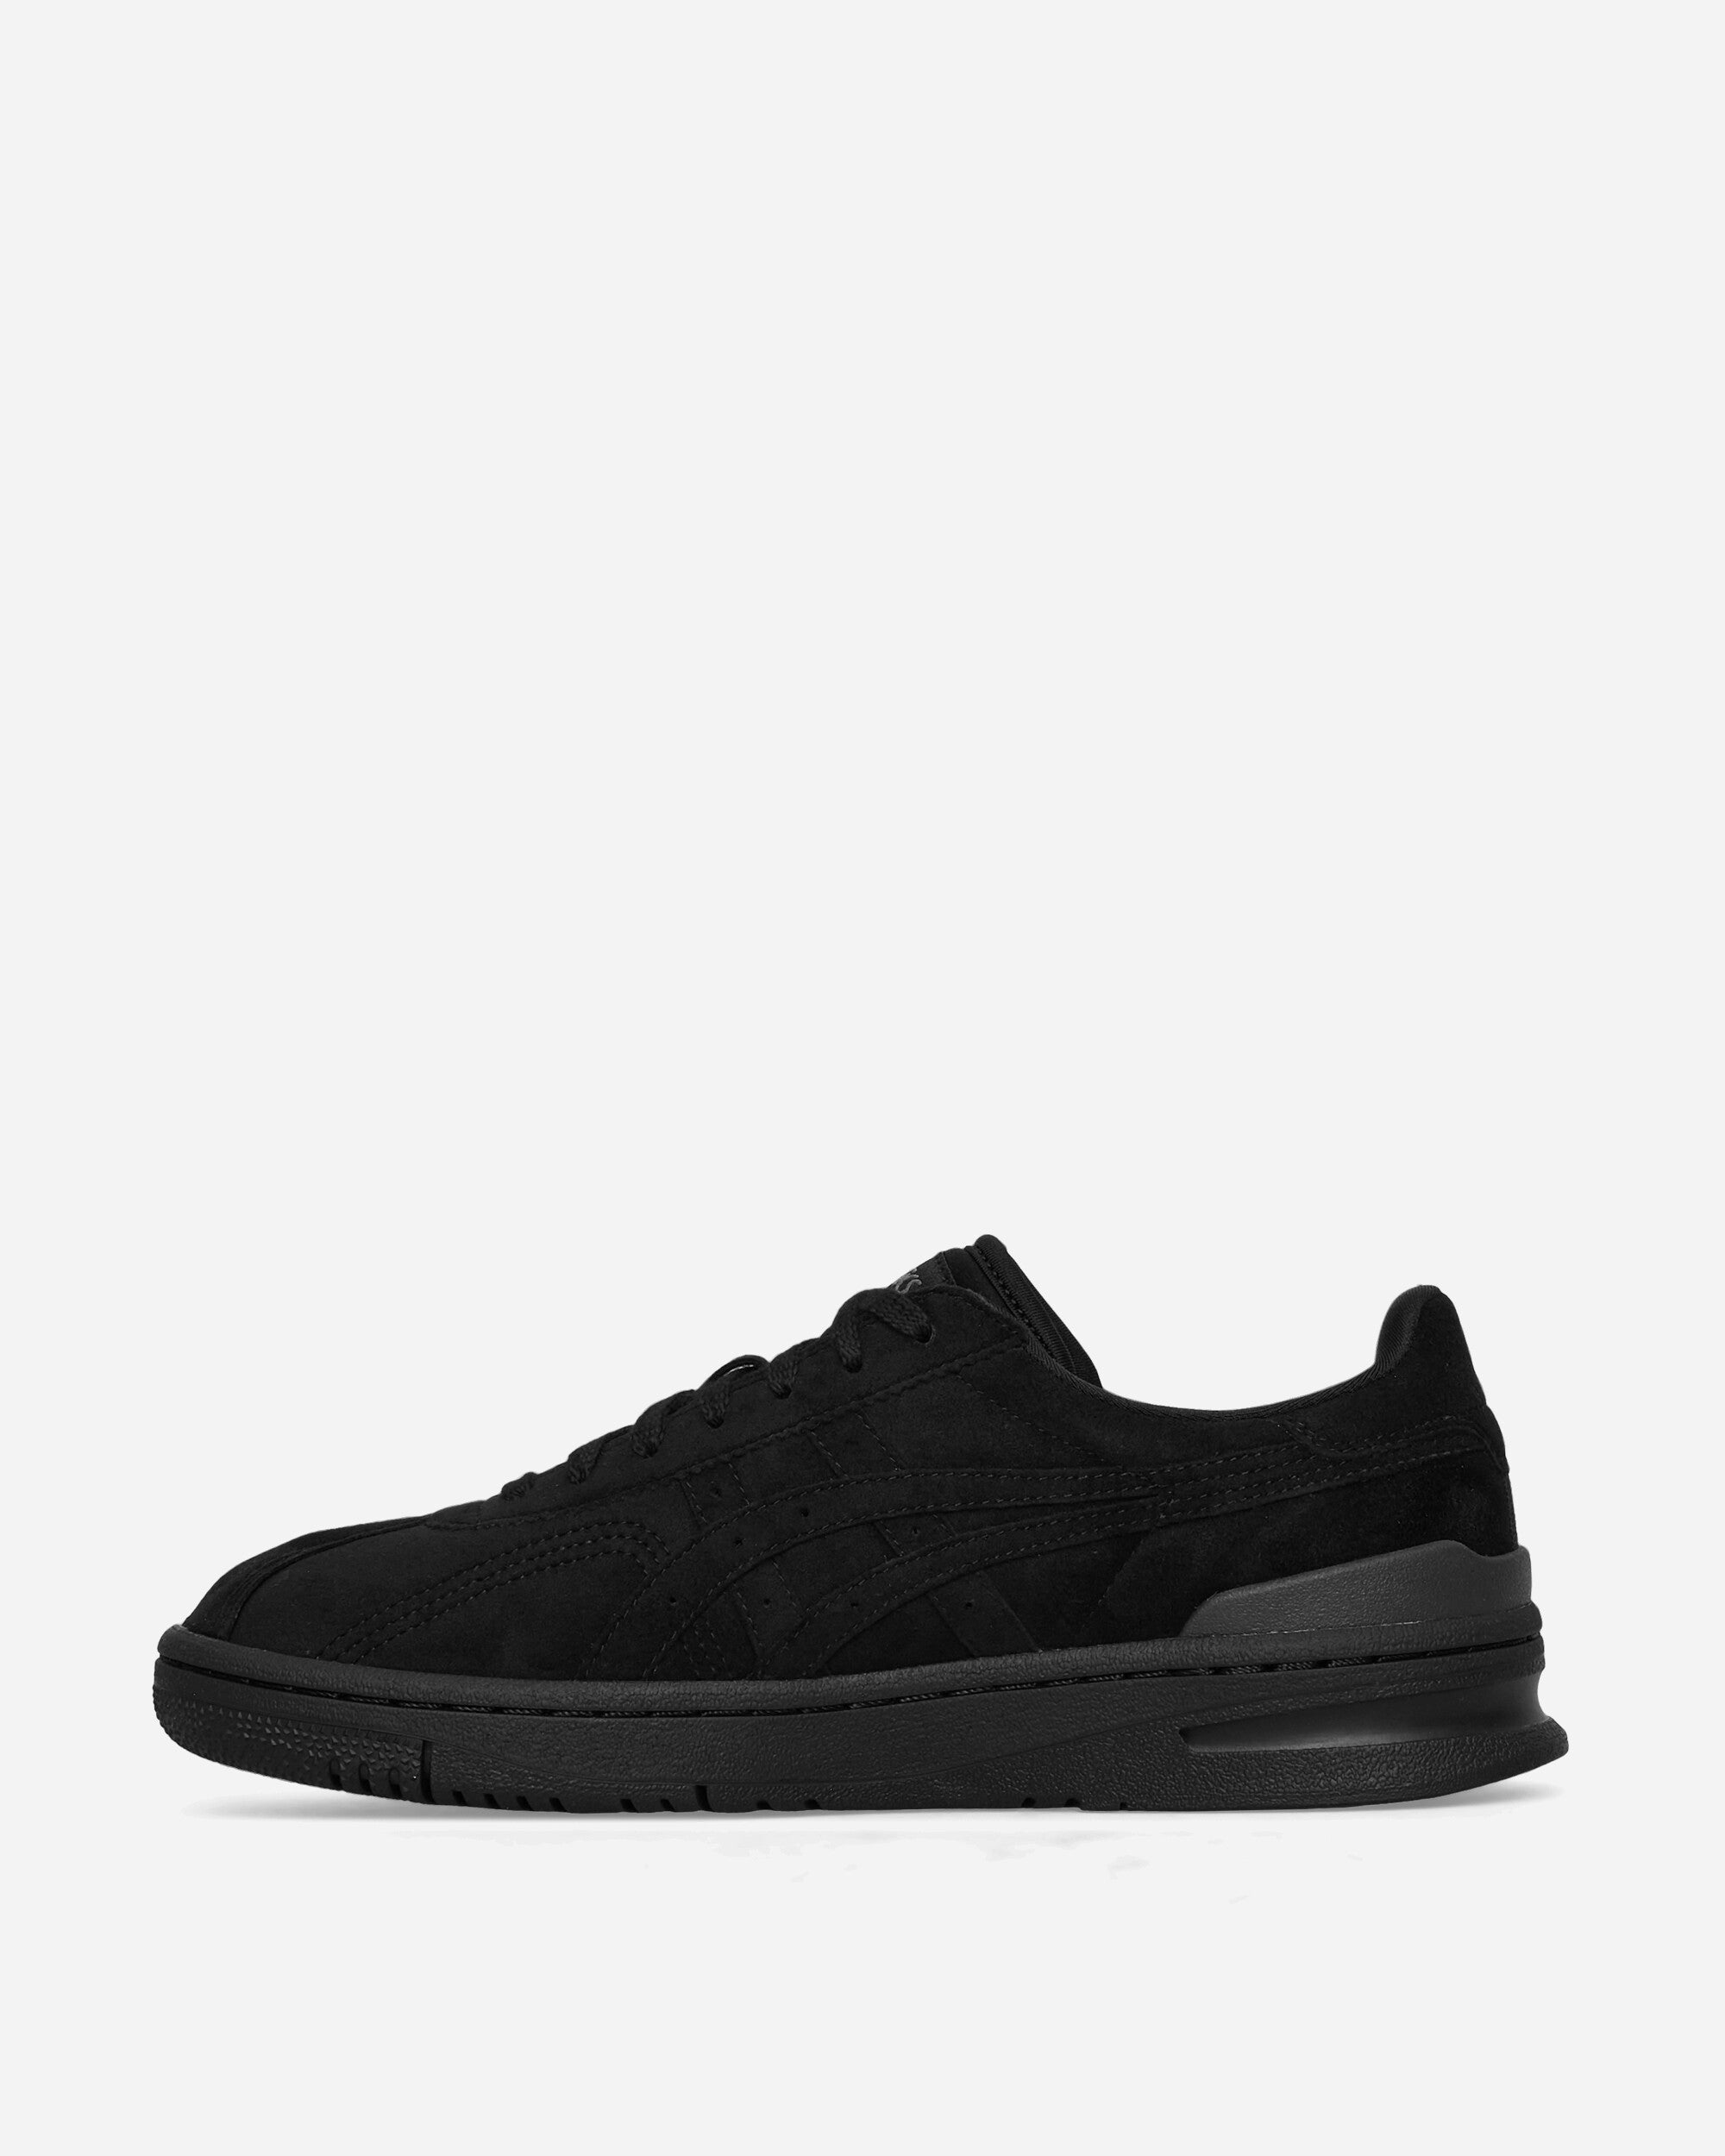 Comme Des Garçons Shirt Asics Sneakers Black Sneakers Low FK-K101-S23 1